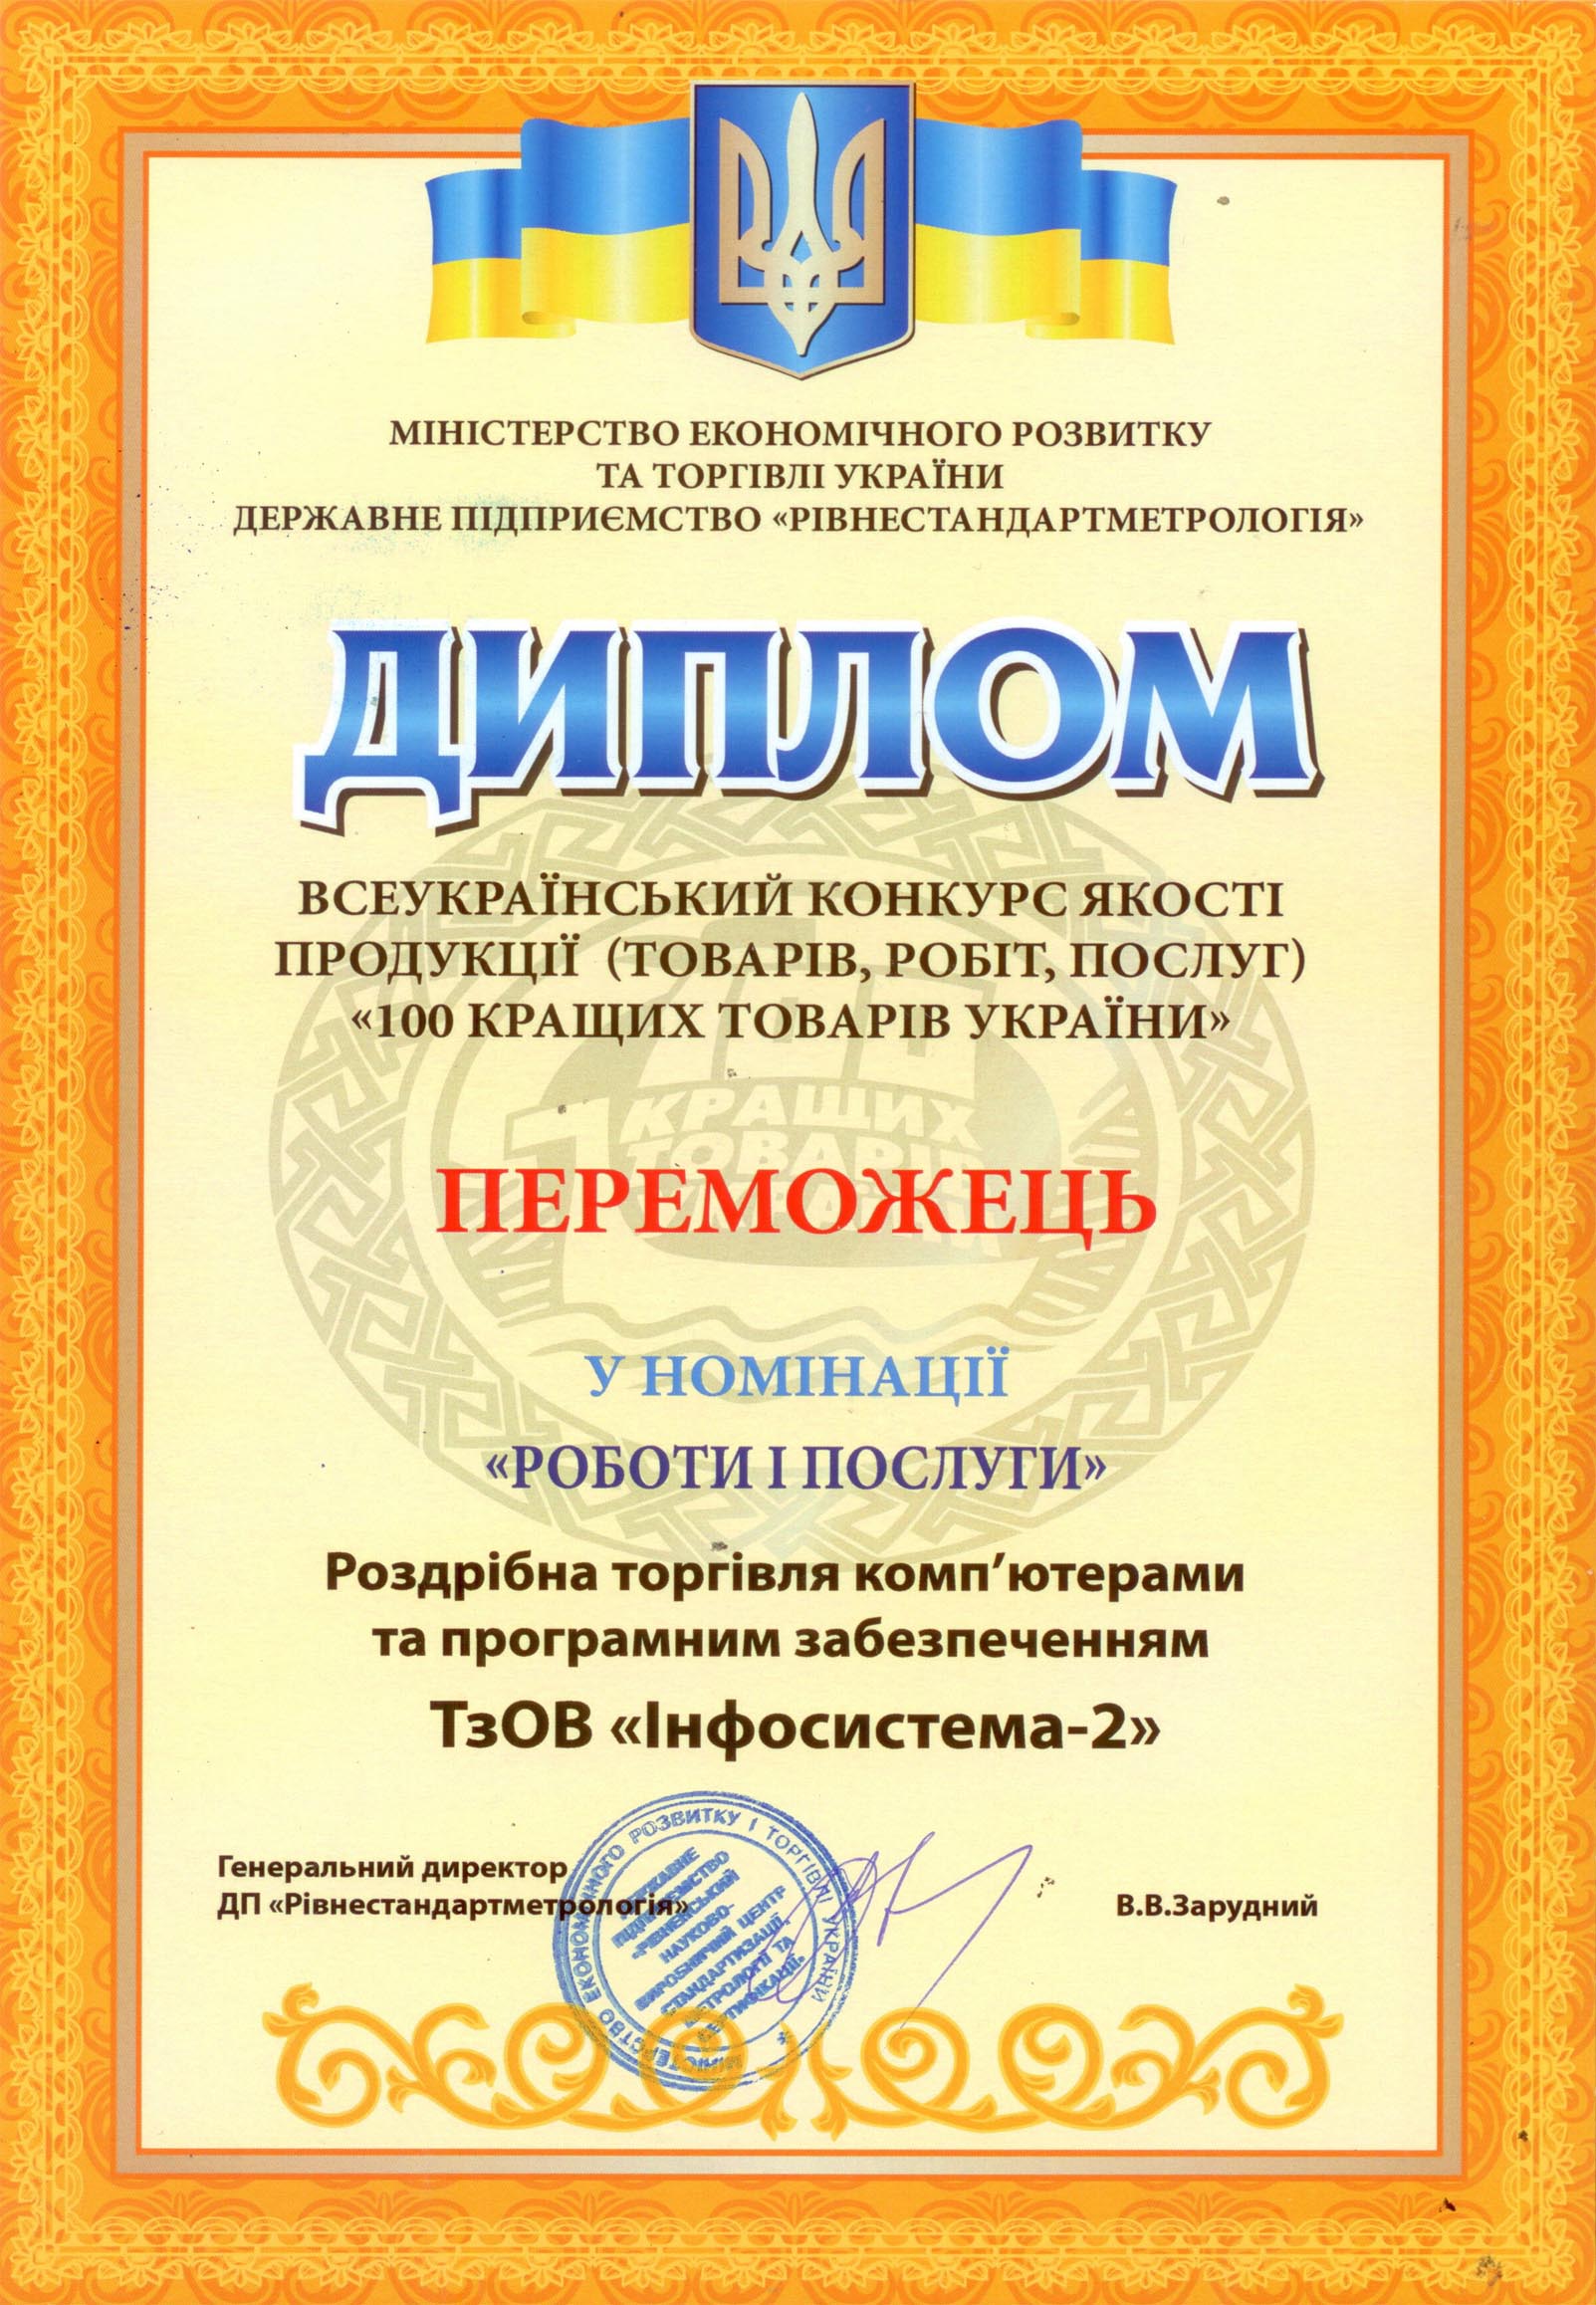 Підприємство "Інфосистема-2"-ТОВ отримало Диплом переможця конкурсу "100 кращих товарів".